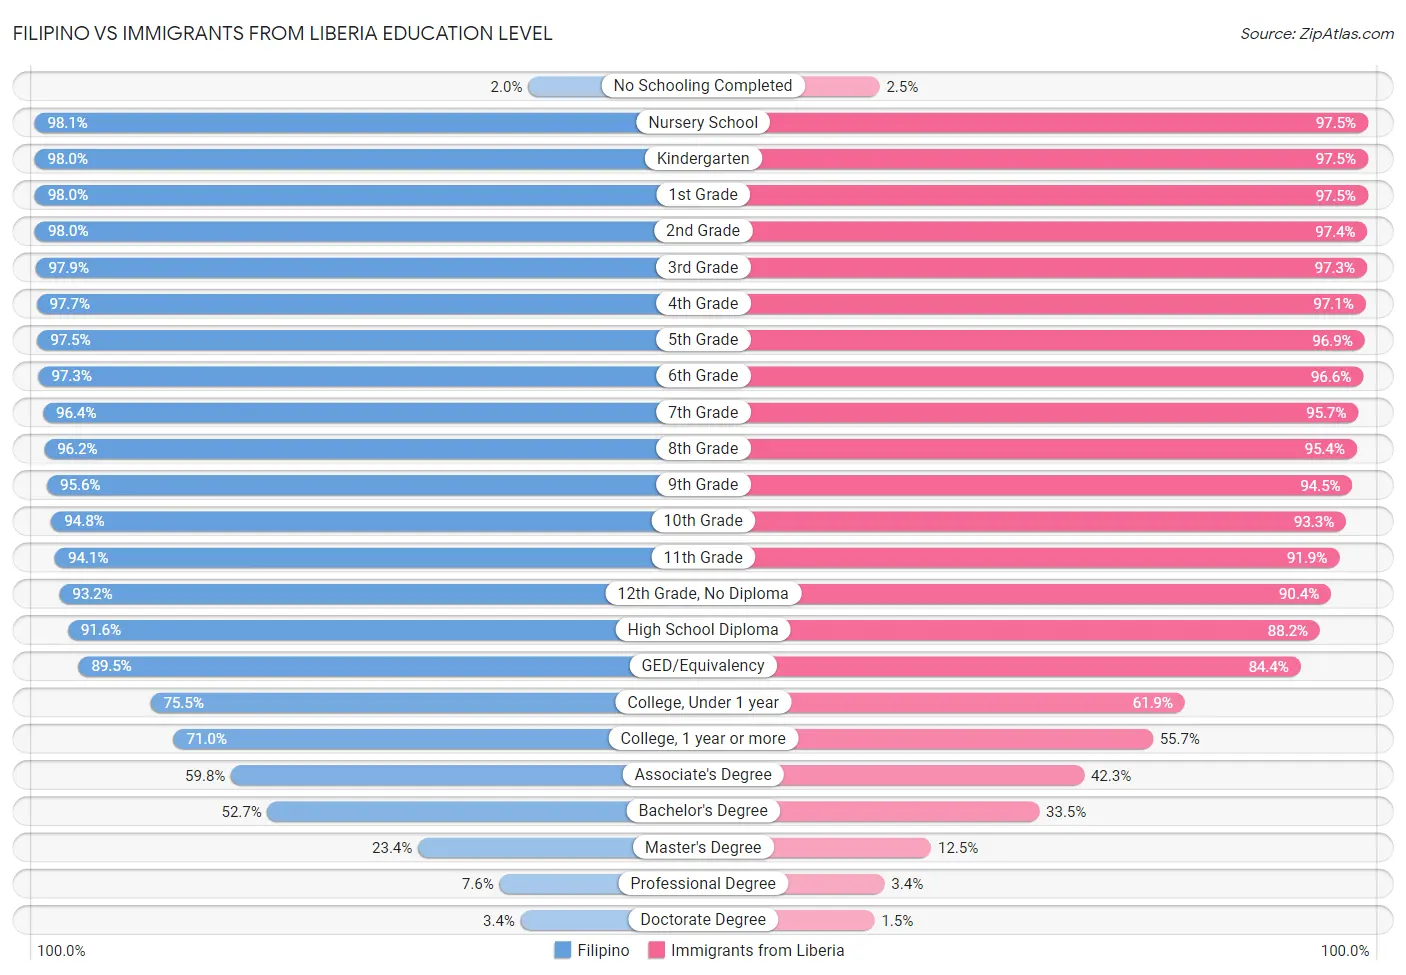 Filipino vs Immigrants from Liberia Education Level